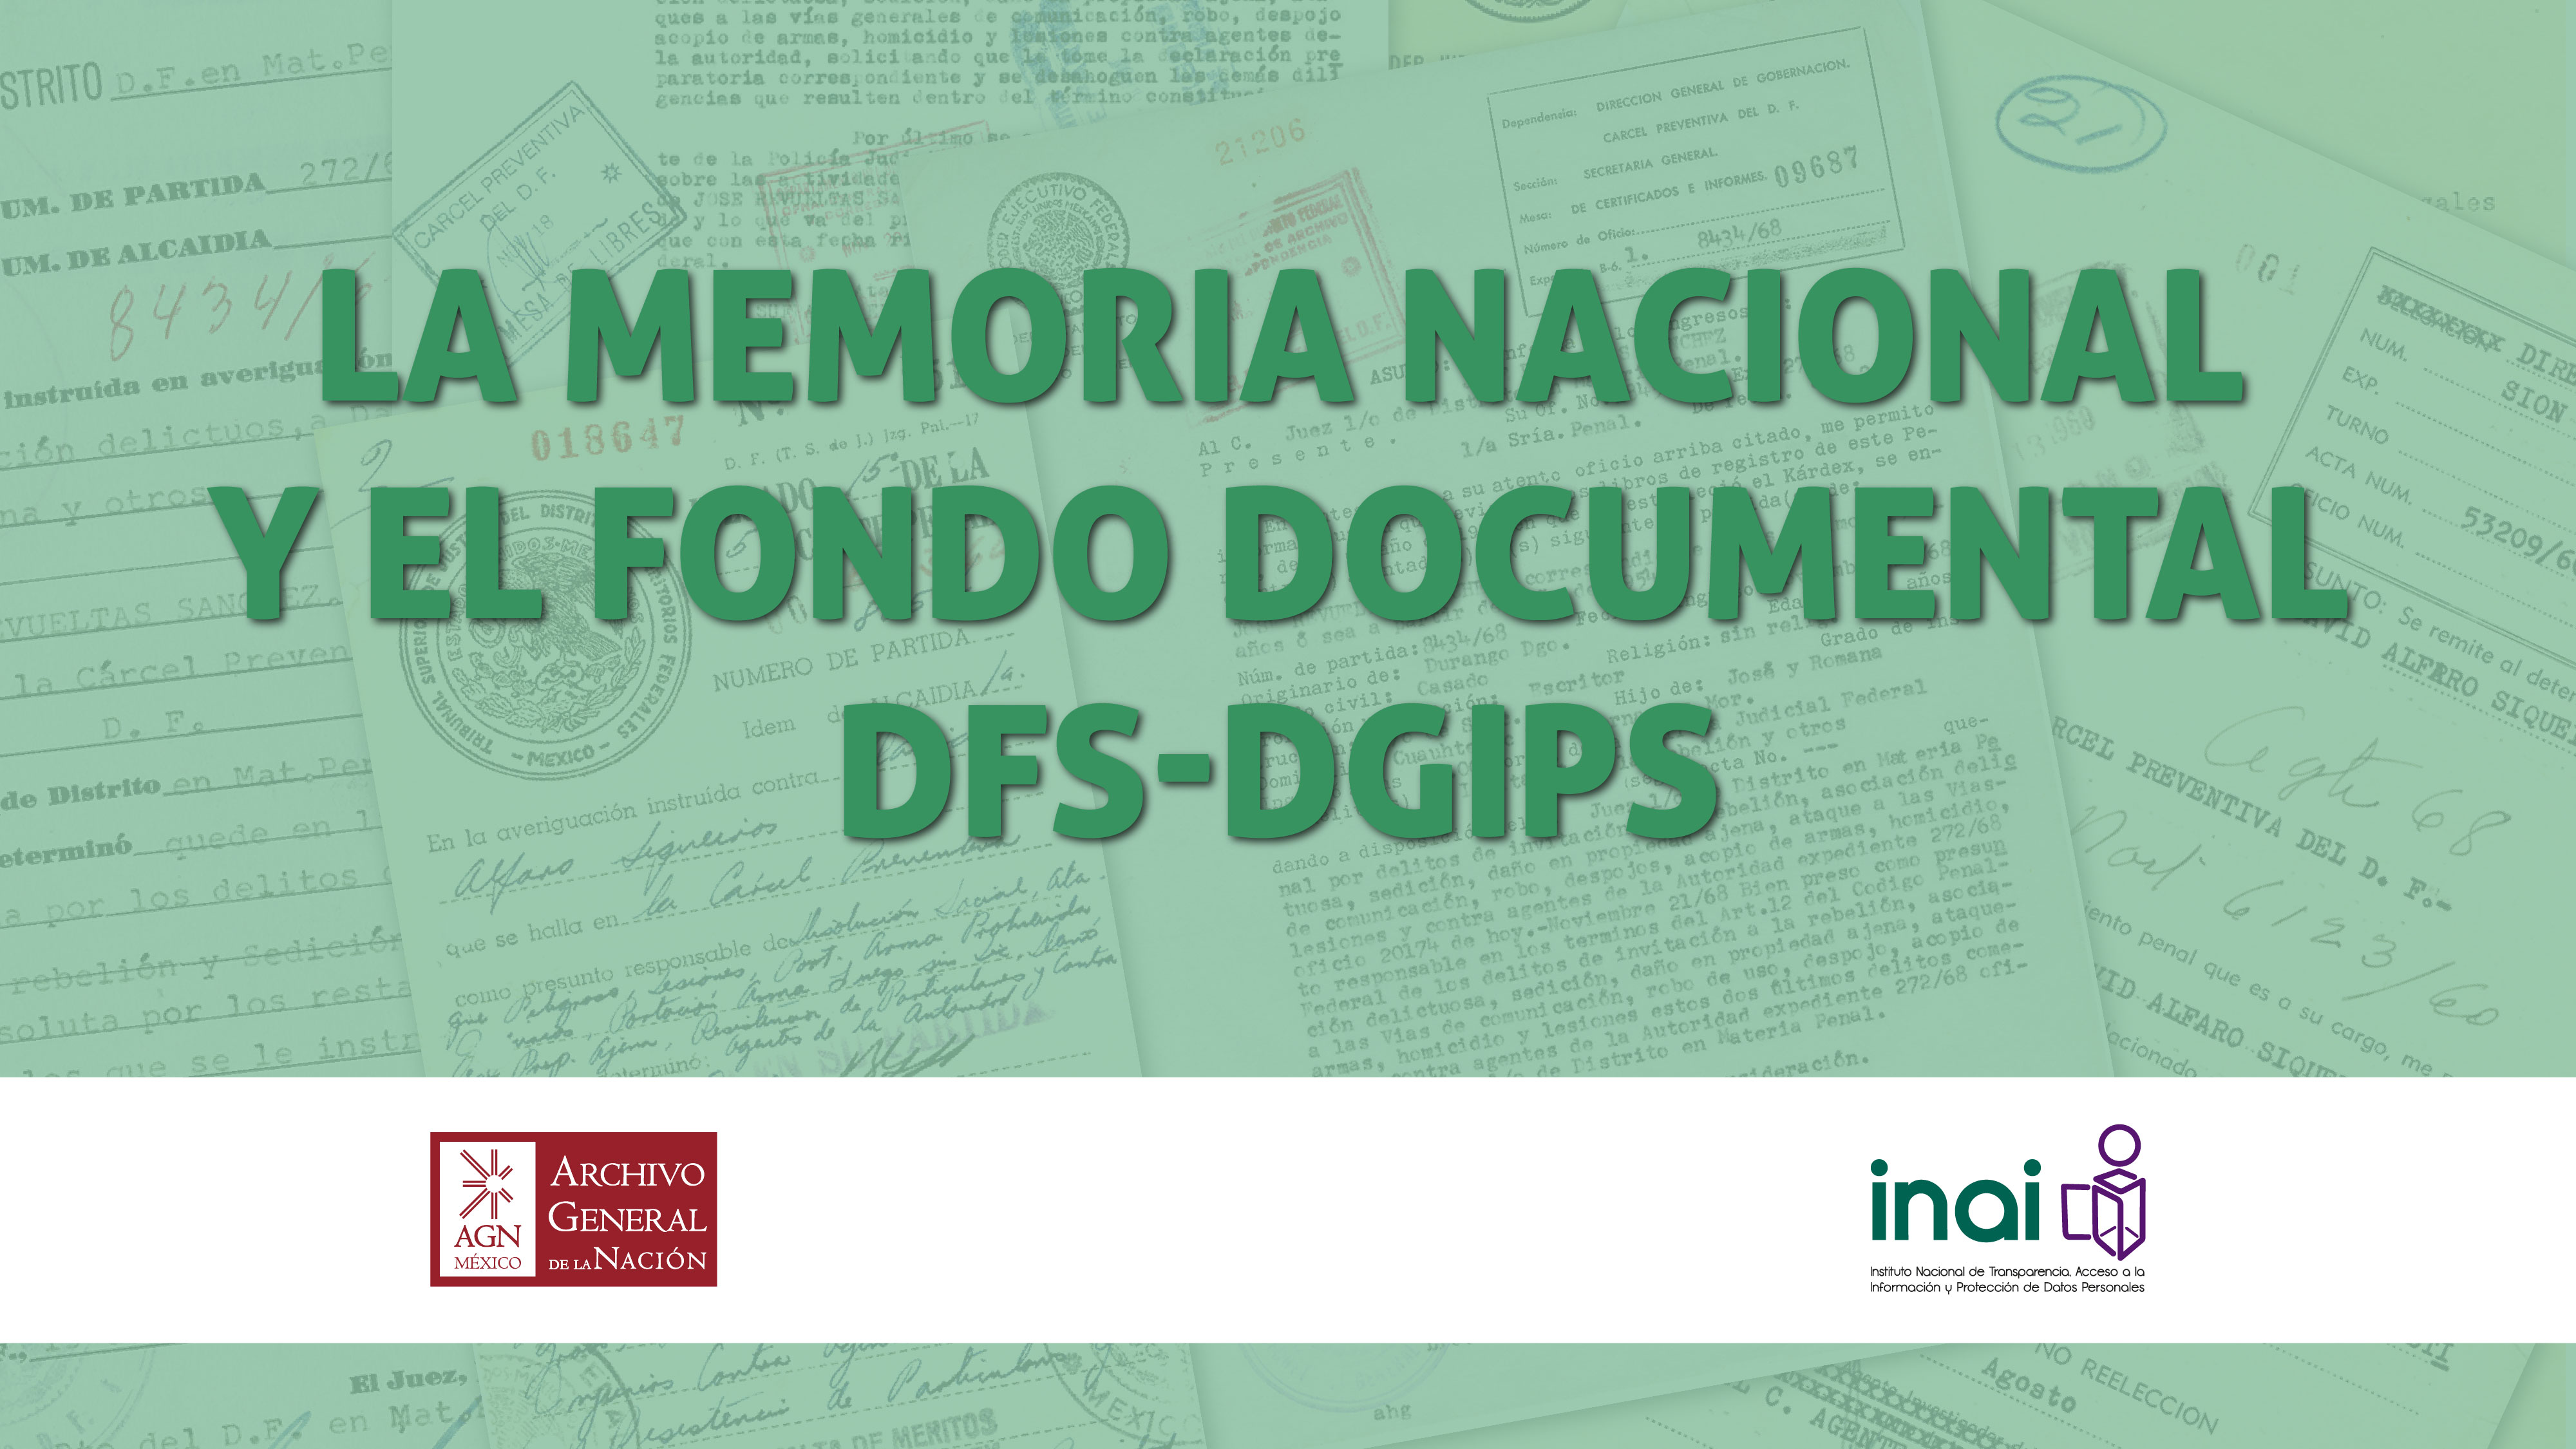 Título de la conferencia que dice: La memoria nacional y el fondo documental DFS-DGIPS